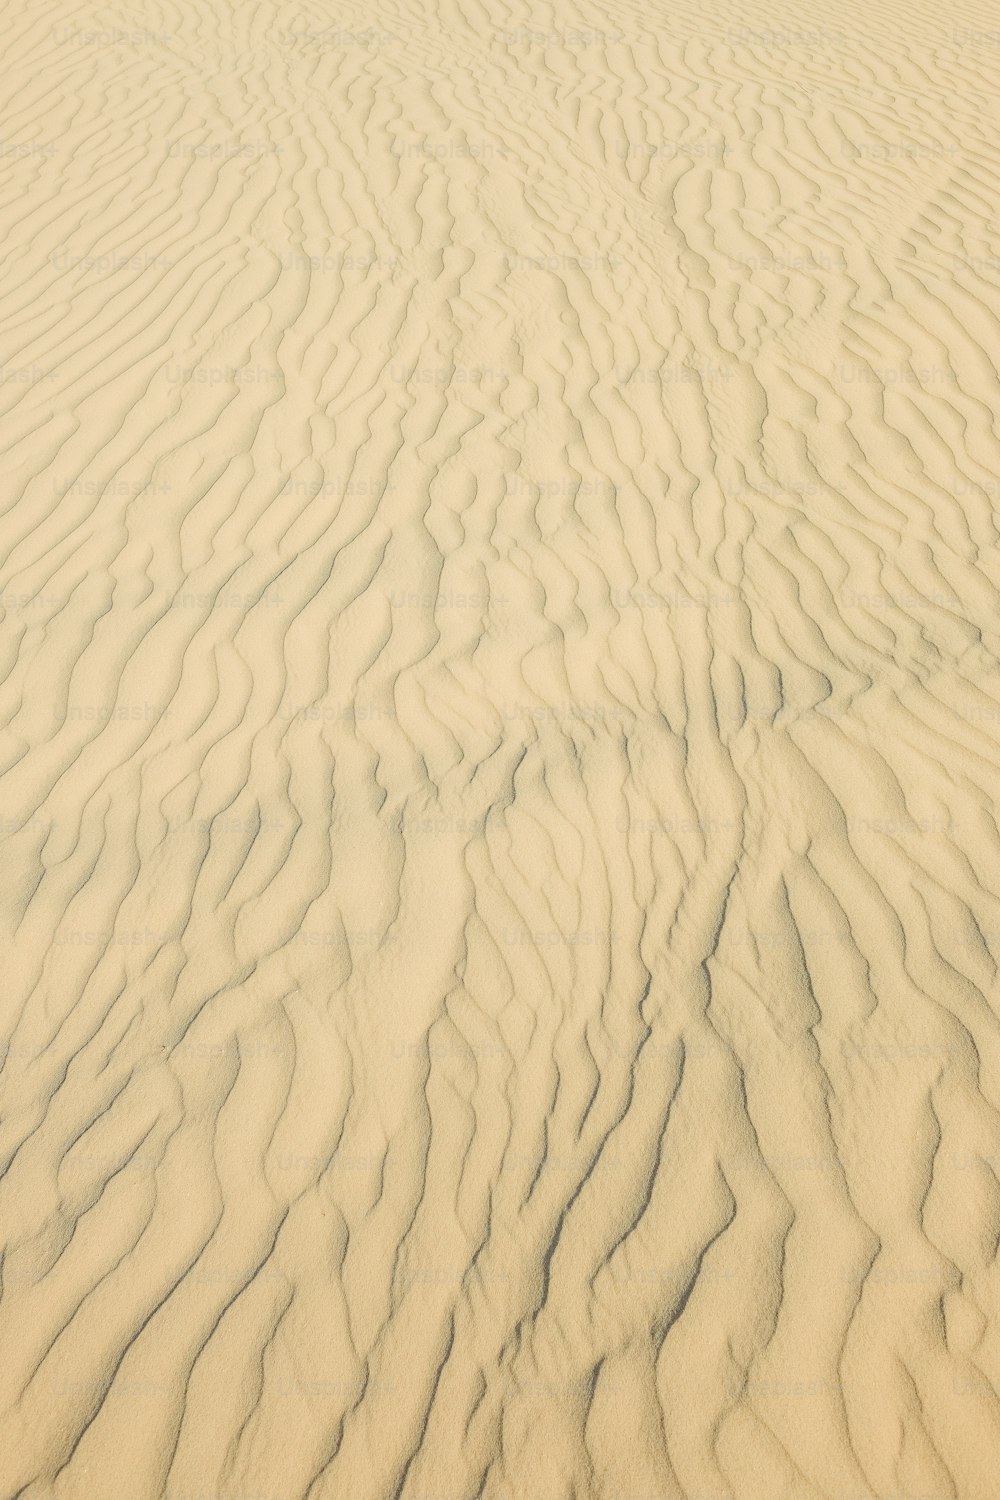 Gros plan d’une dune de sable